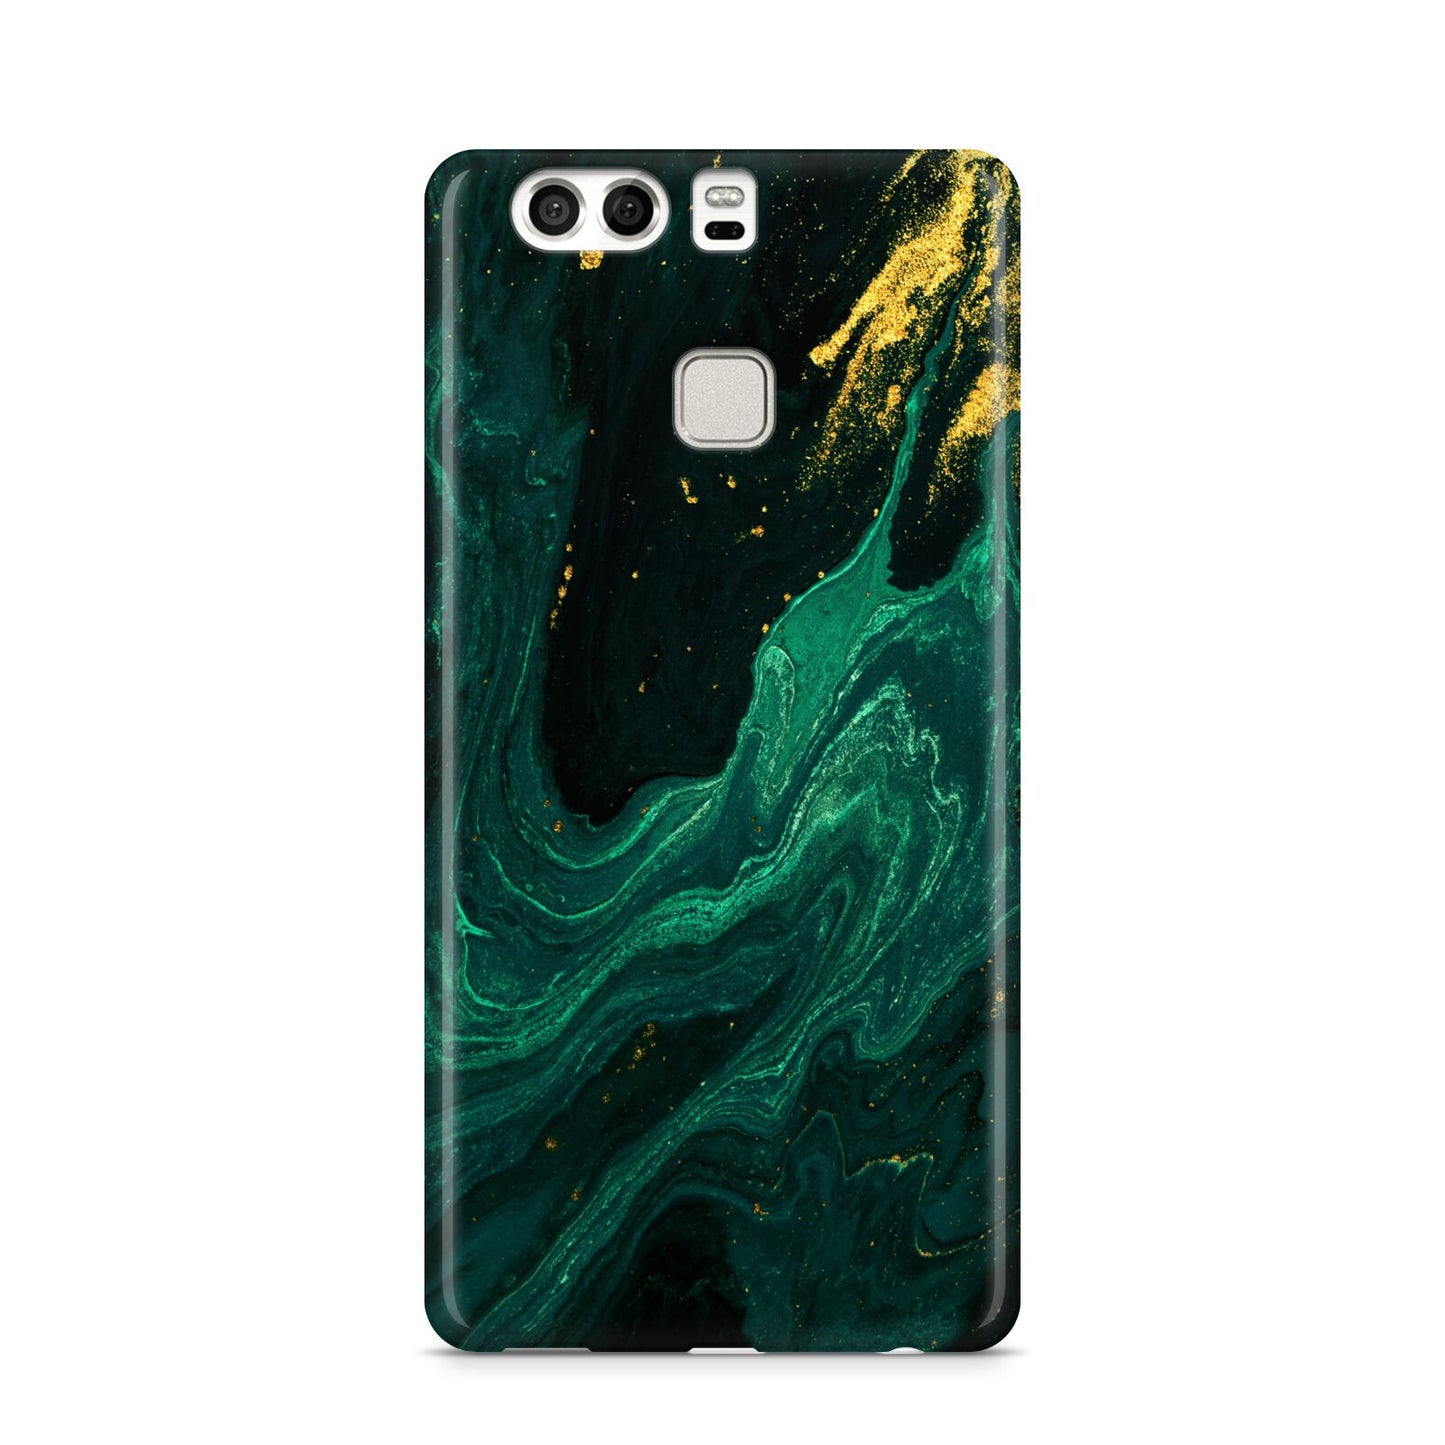 Emerald Green Huawei P9 Case